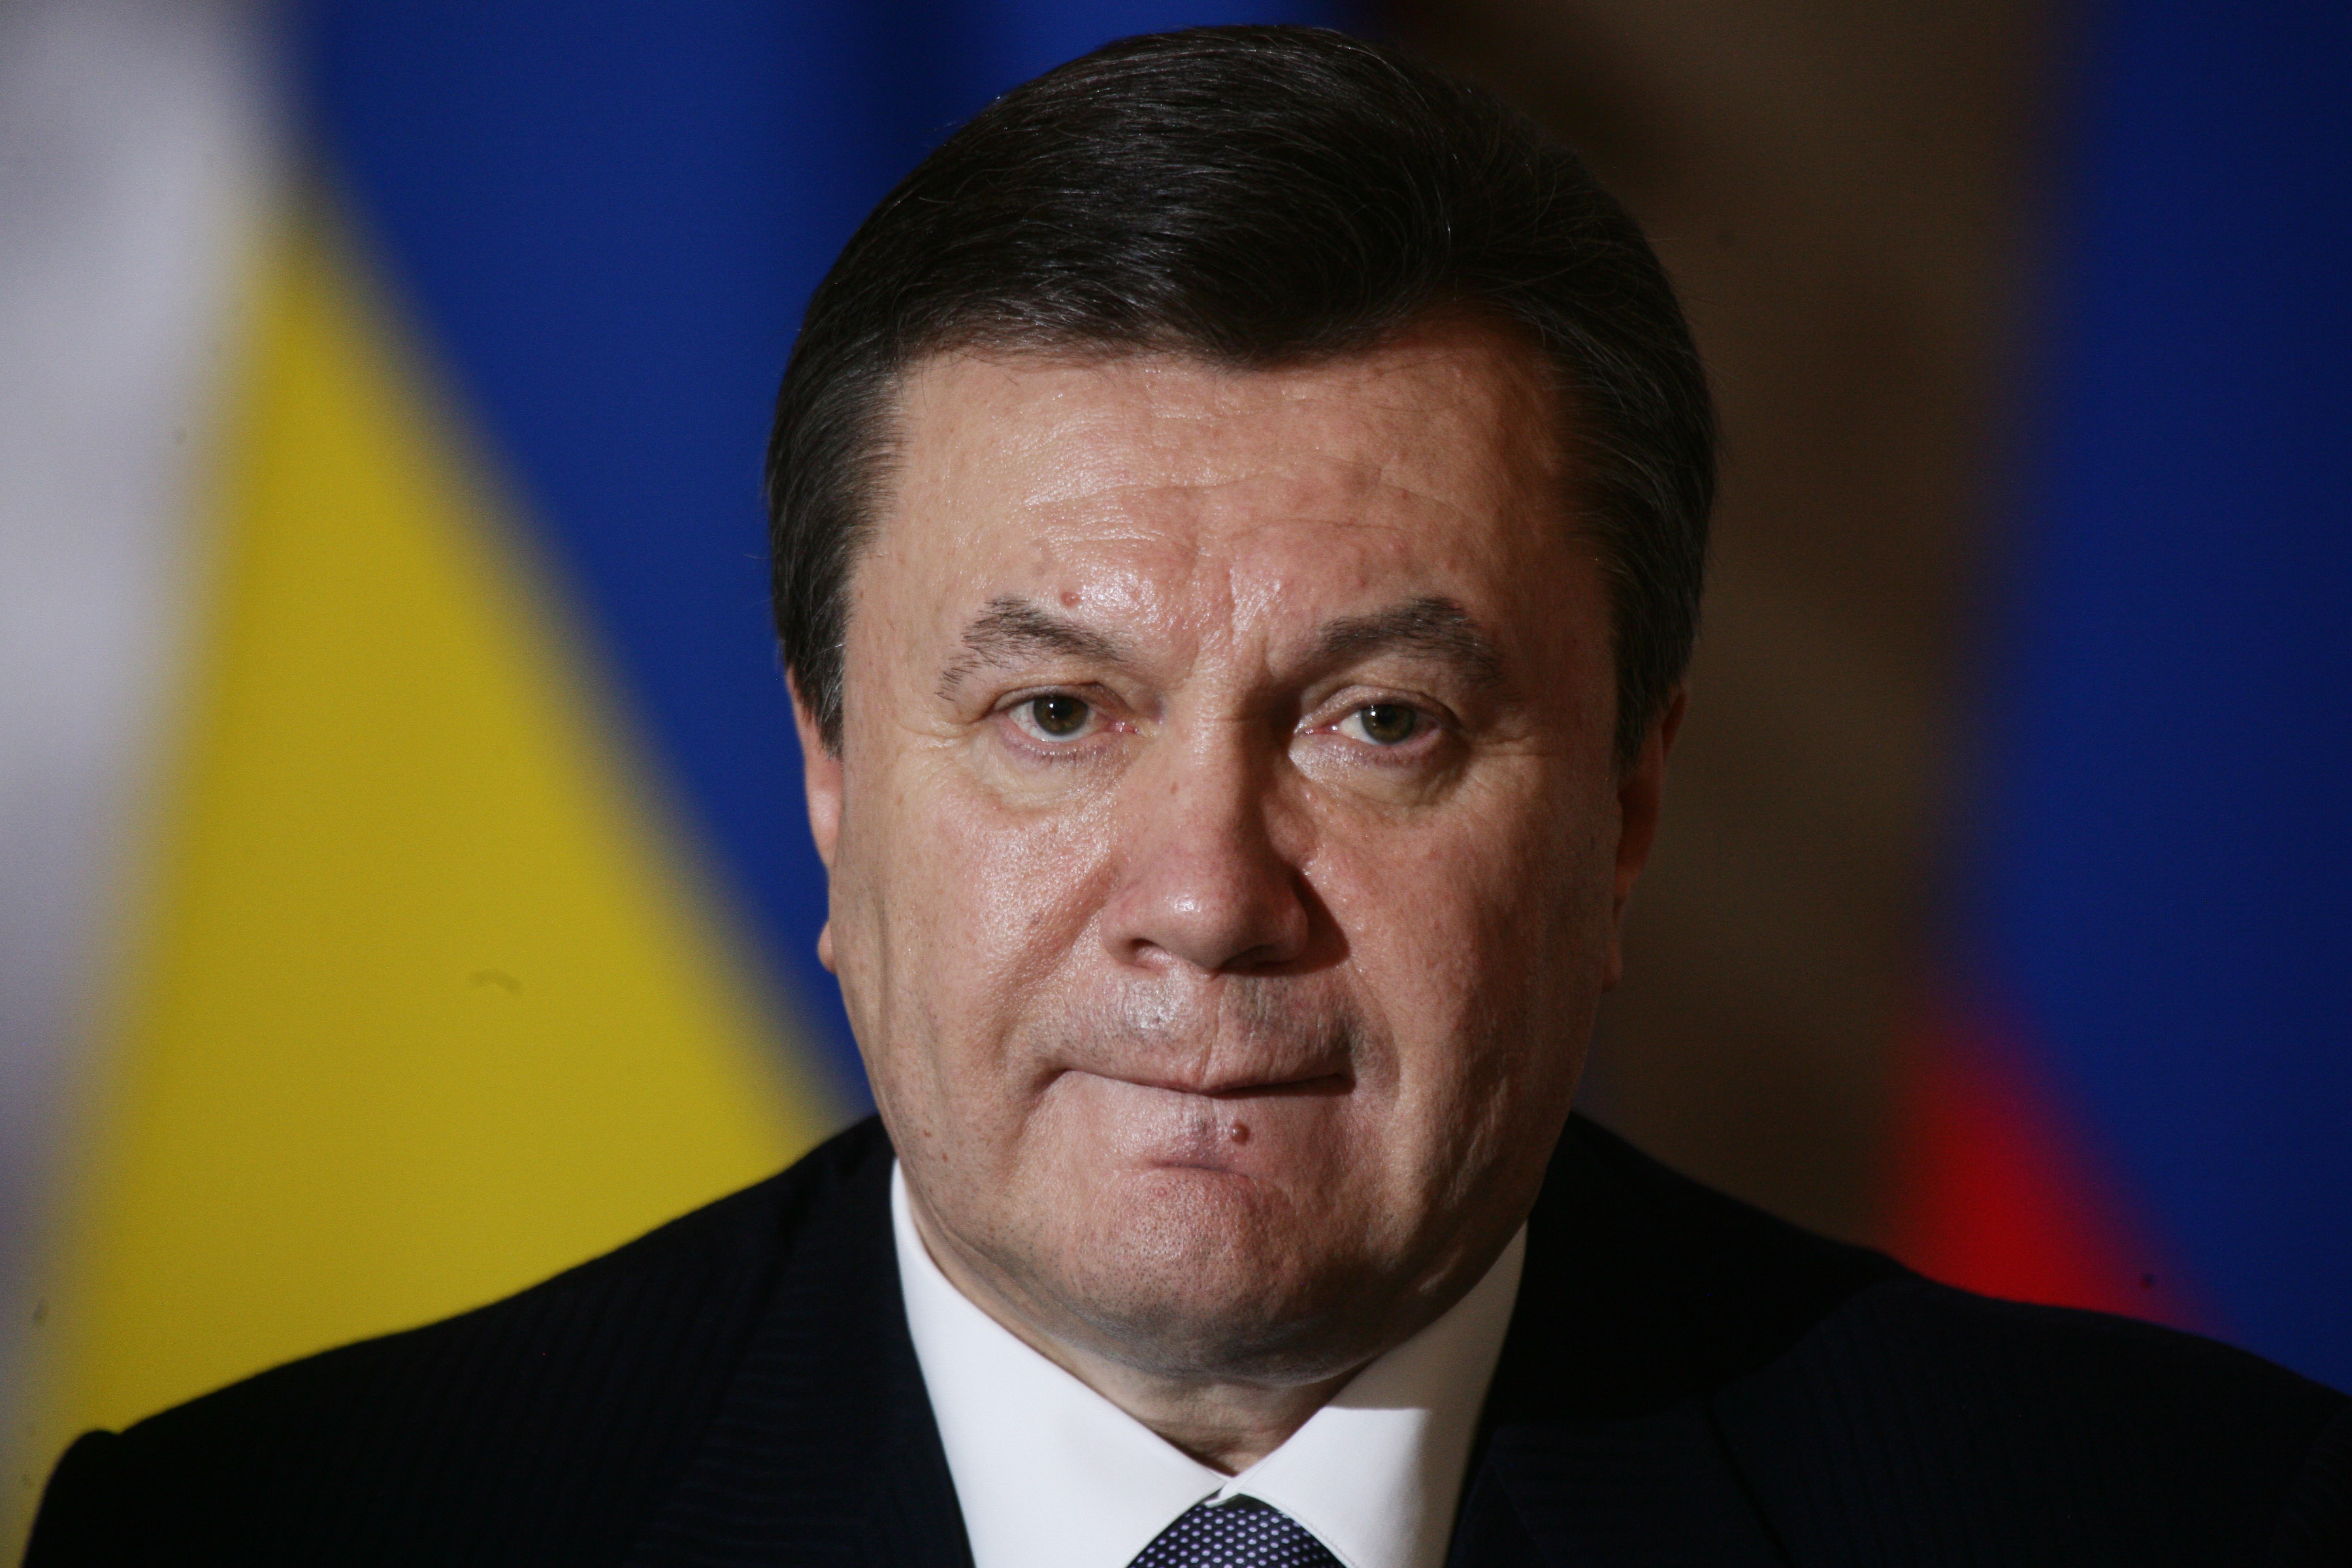 "Янукович - путинская ширма. Он будет нужен Путину еще долго. Никто Януковича сейчас ликвидировать не станет", - политолог Палий